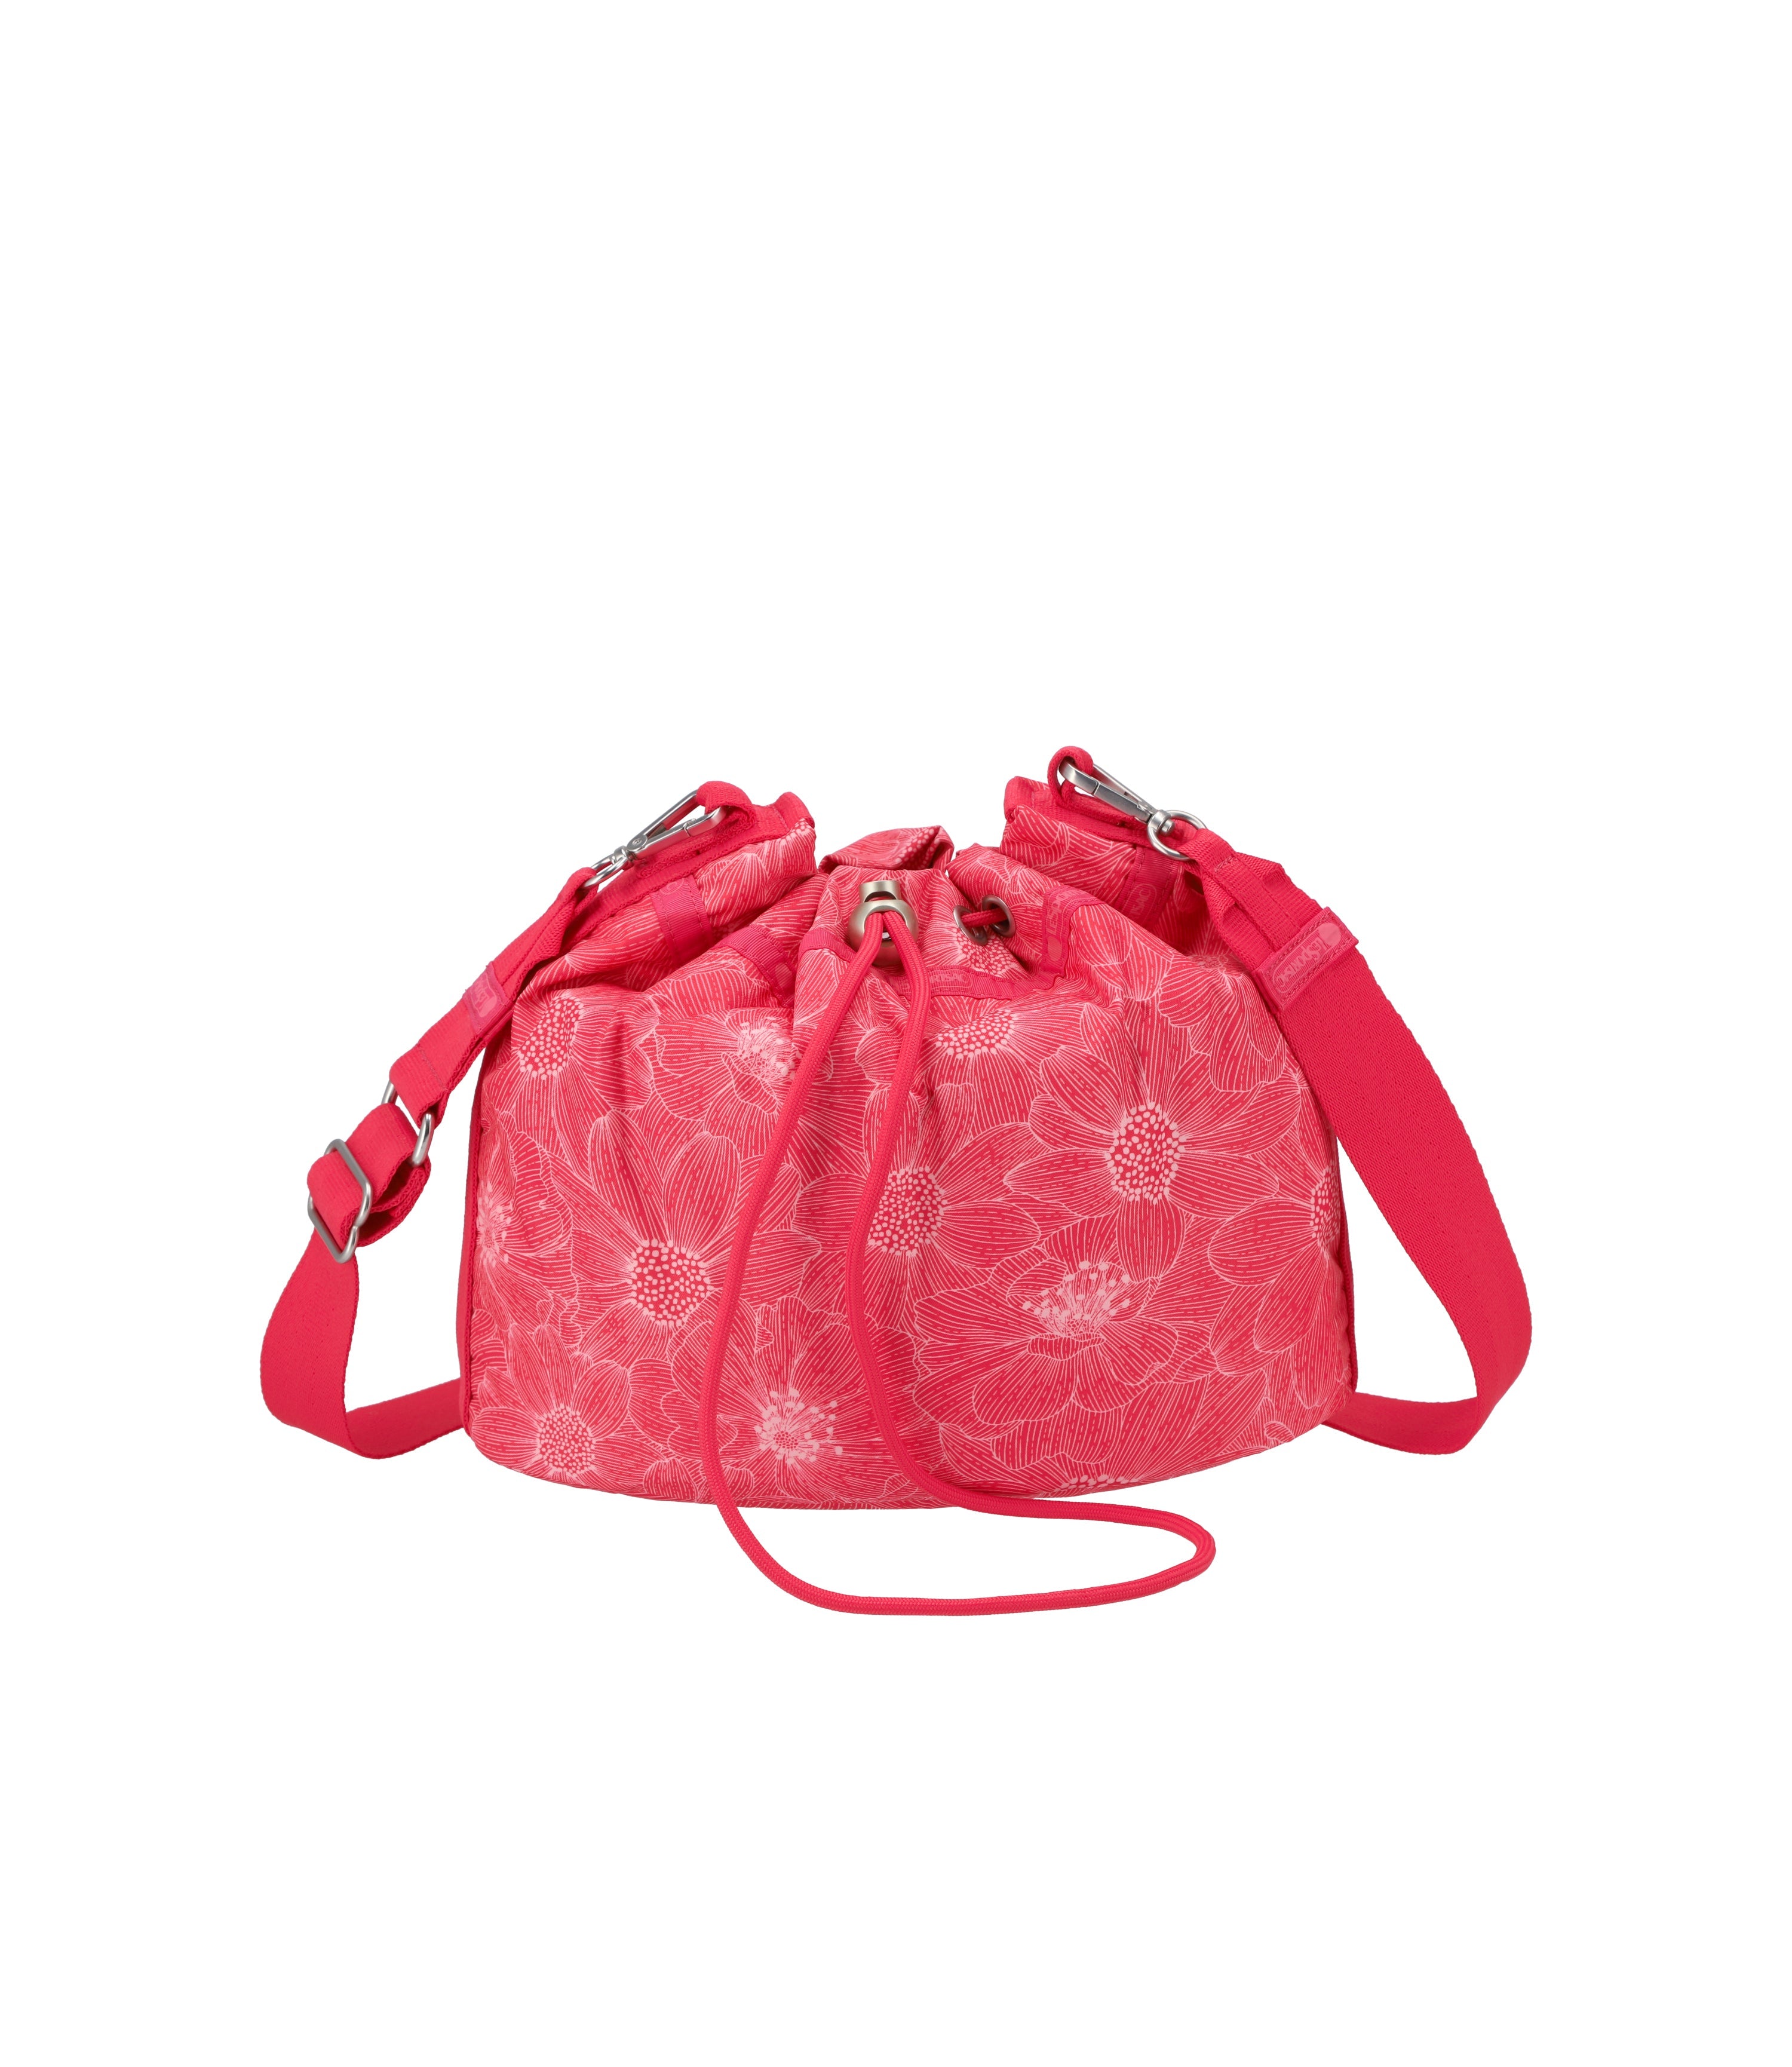 Loving Top Handle Cross Body Bags – Étoile Escape